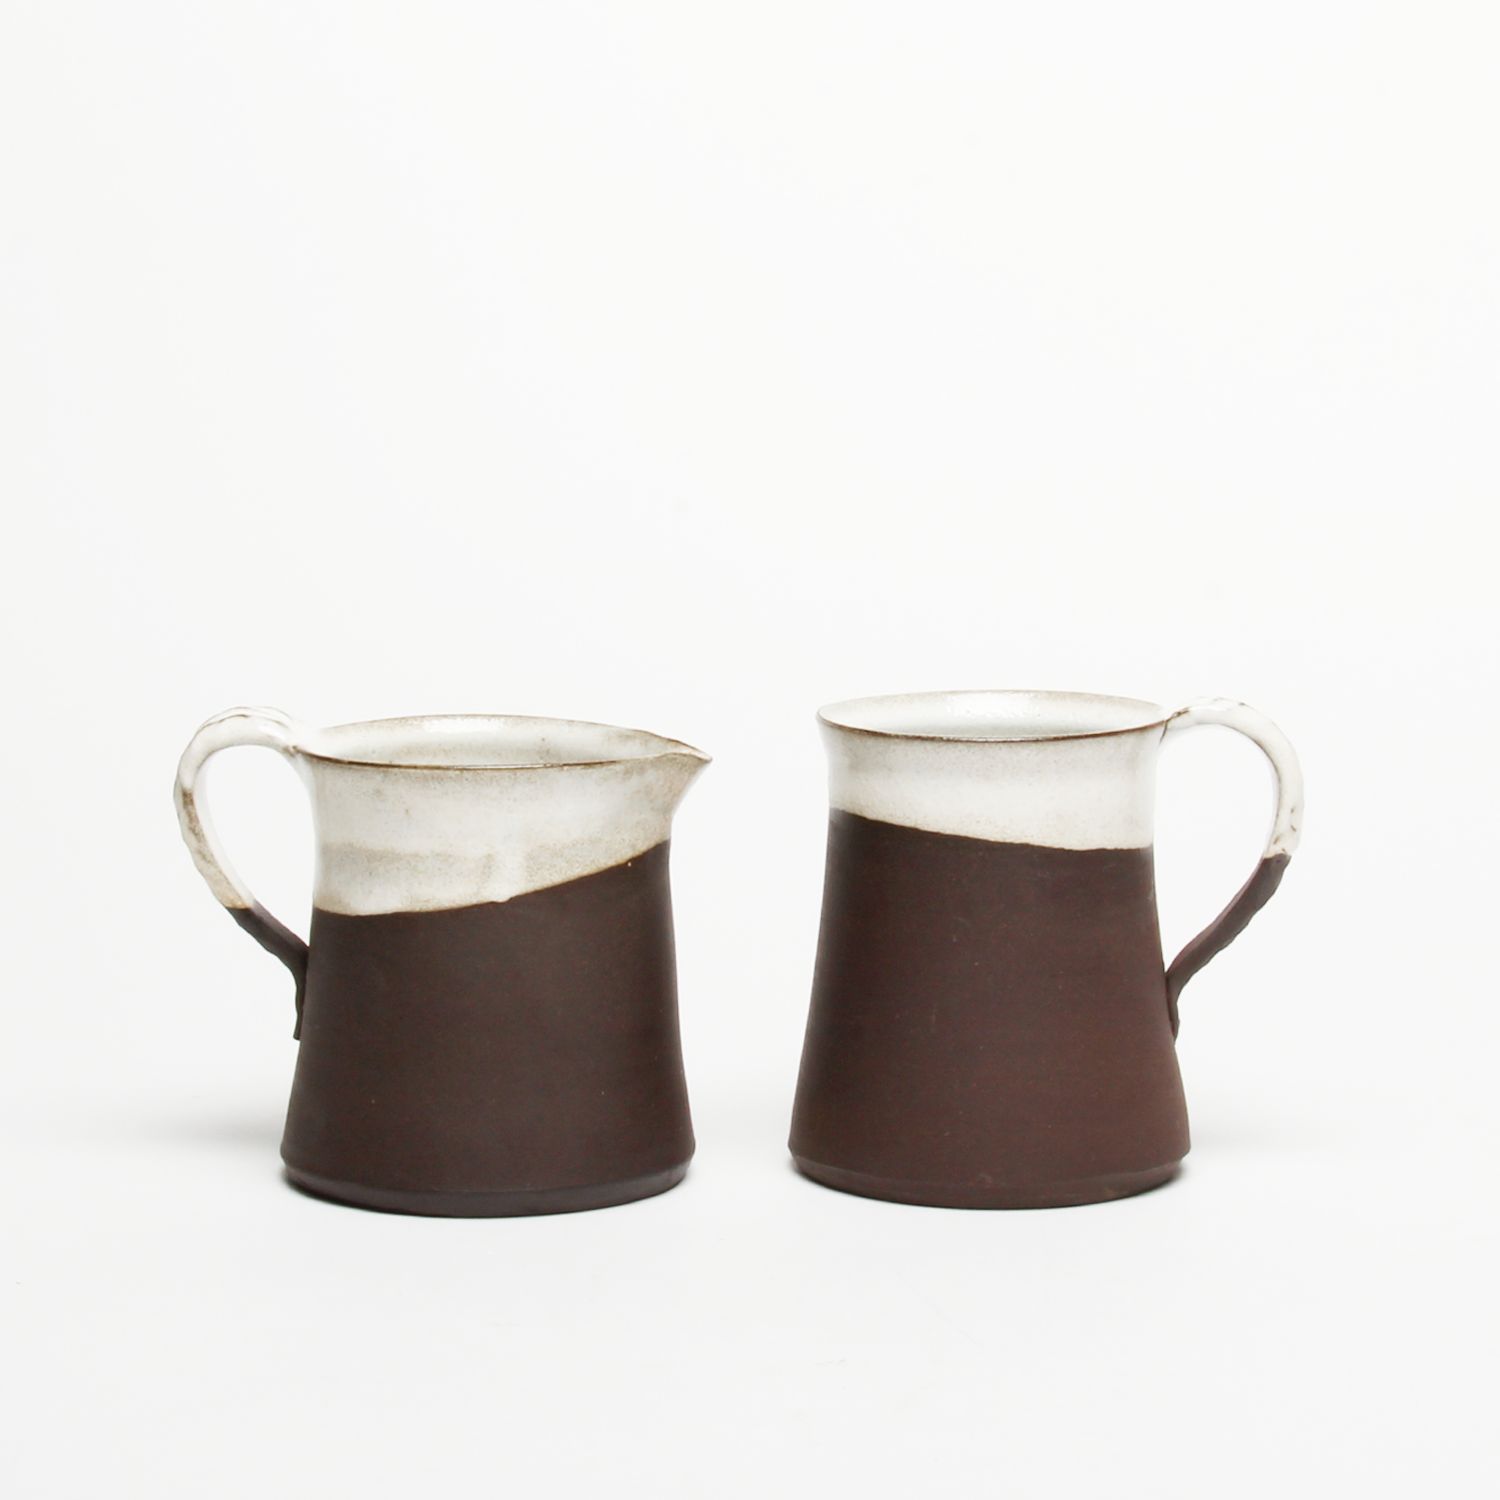 Catharina Goldnau: Black Stoneware Creamer Product Image 4 of 4